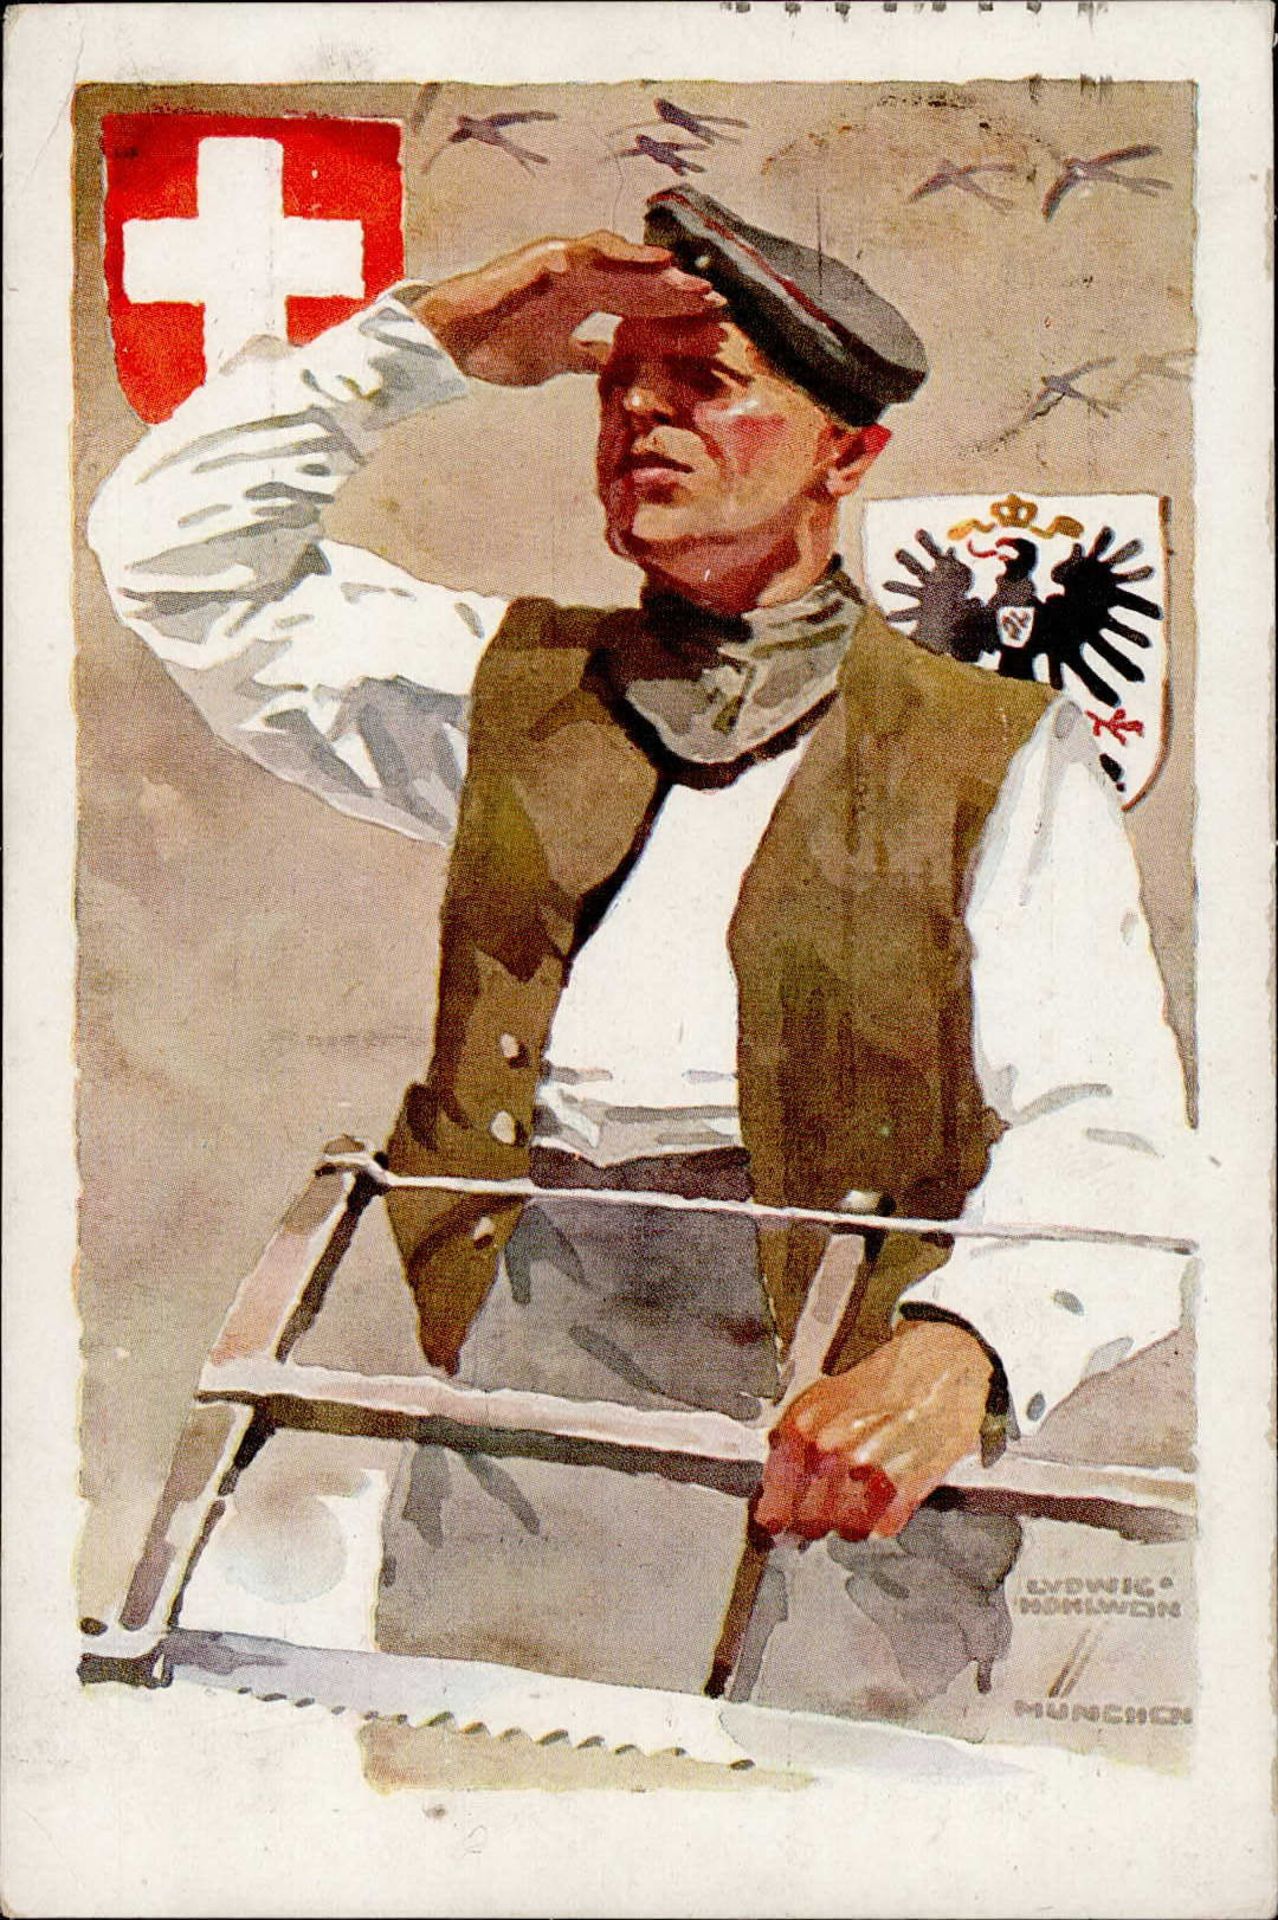 Hohlwein, Ludwig München Deutsche Internierten Ausstellung 1918 signiert I-II